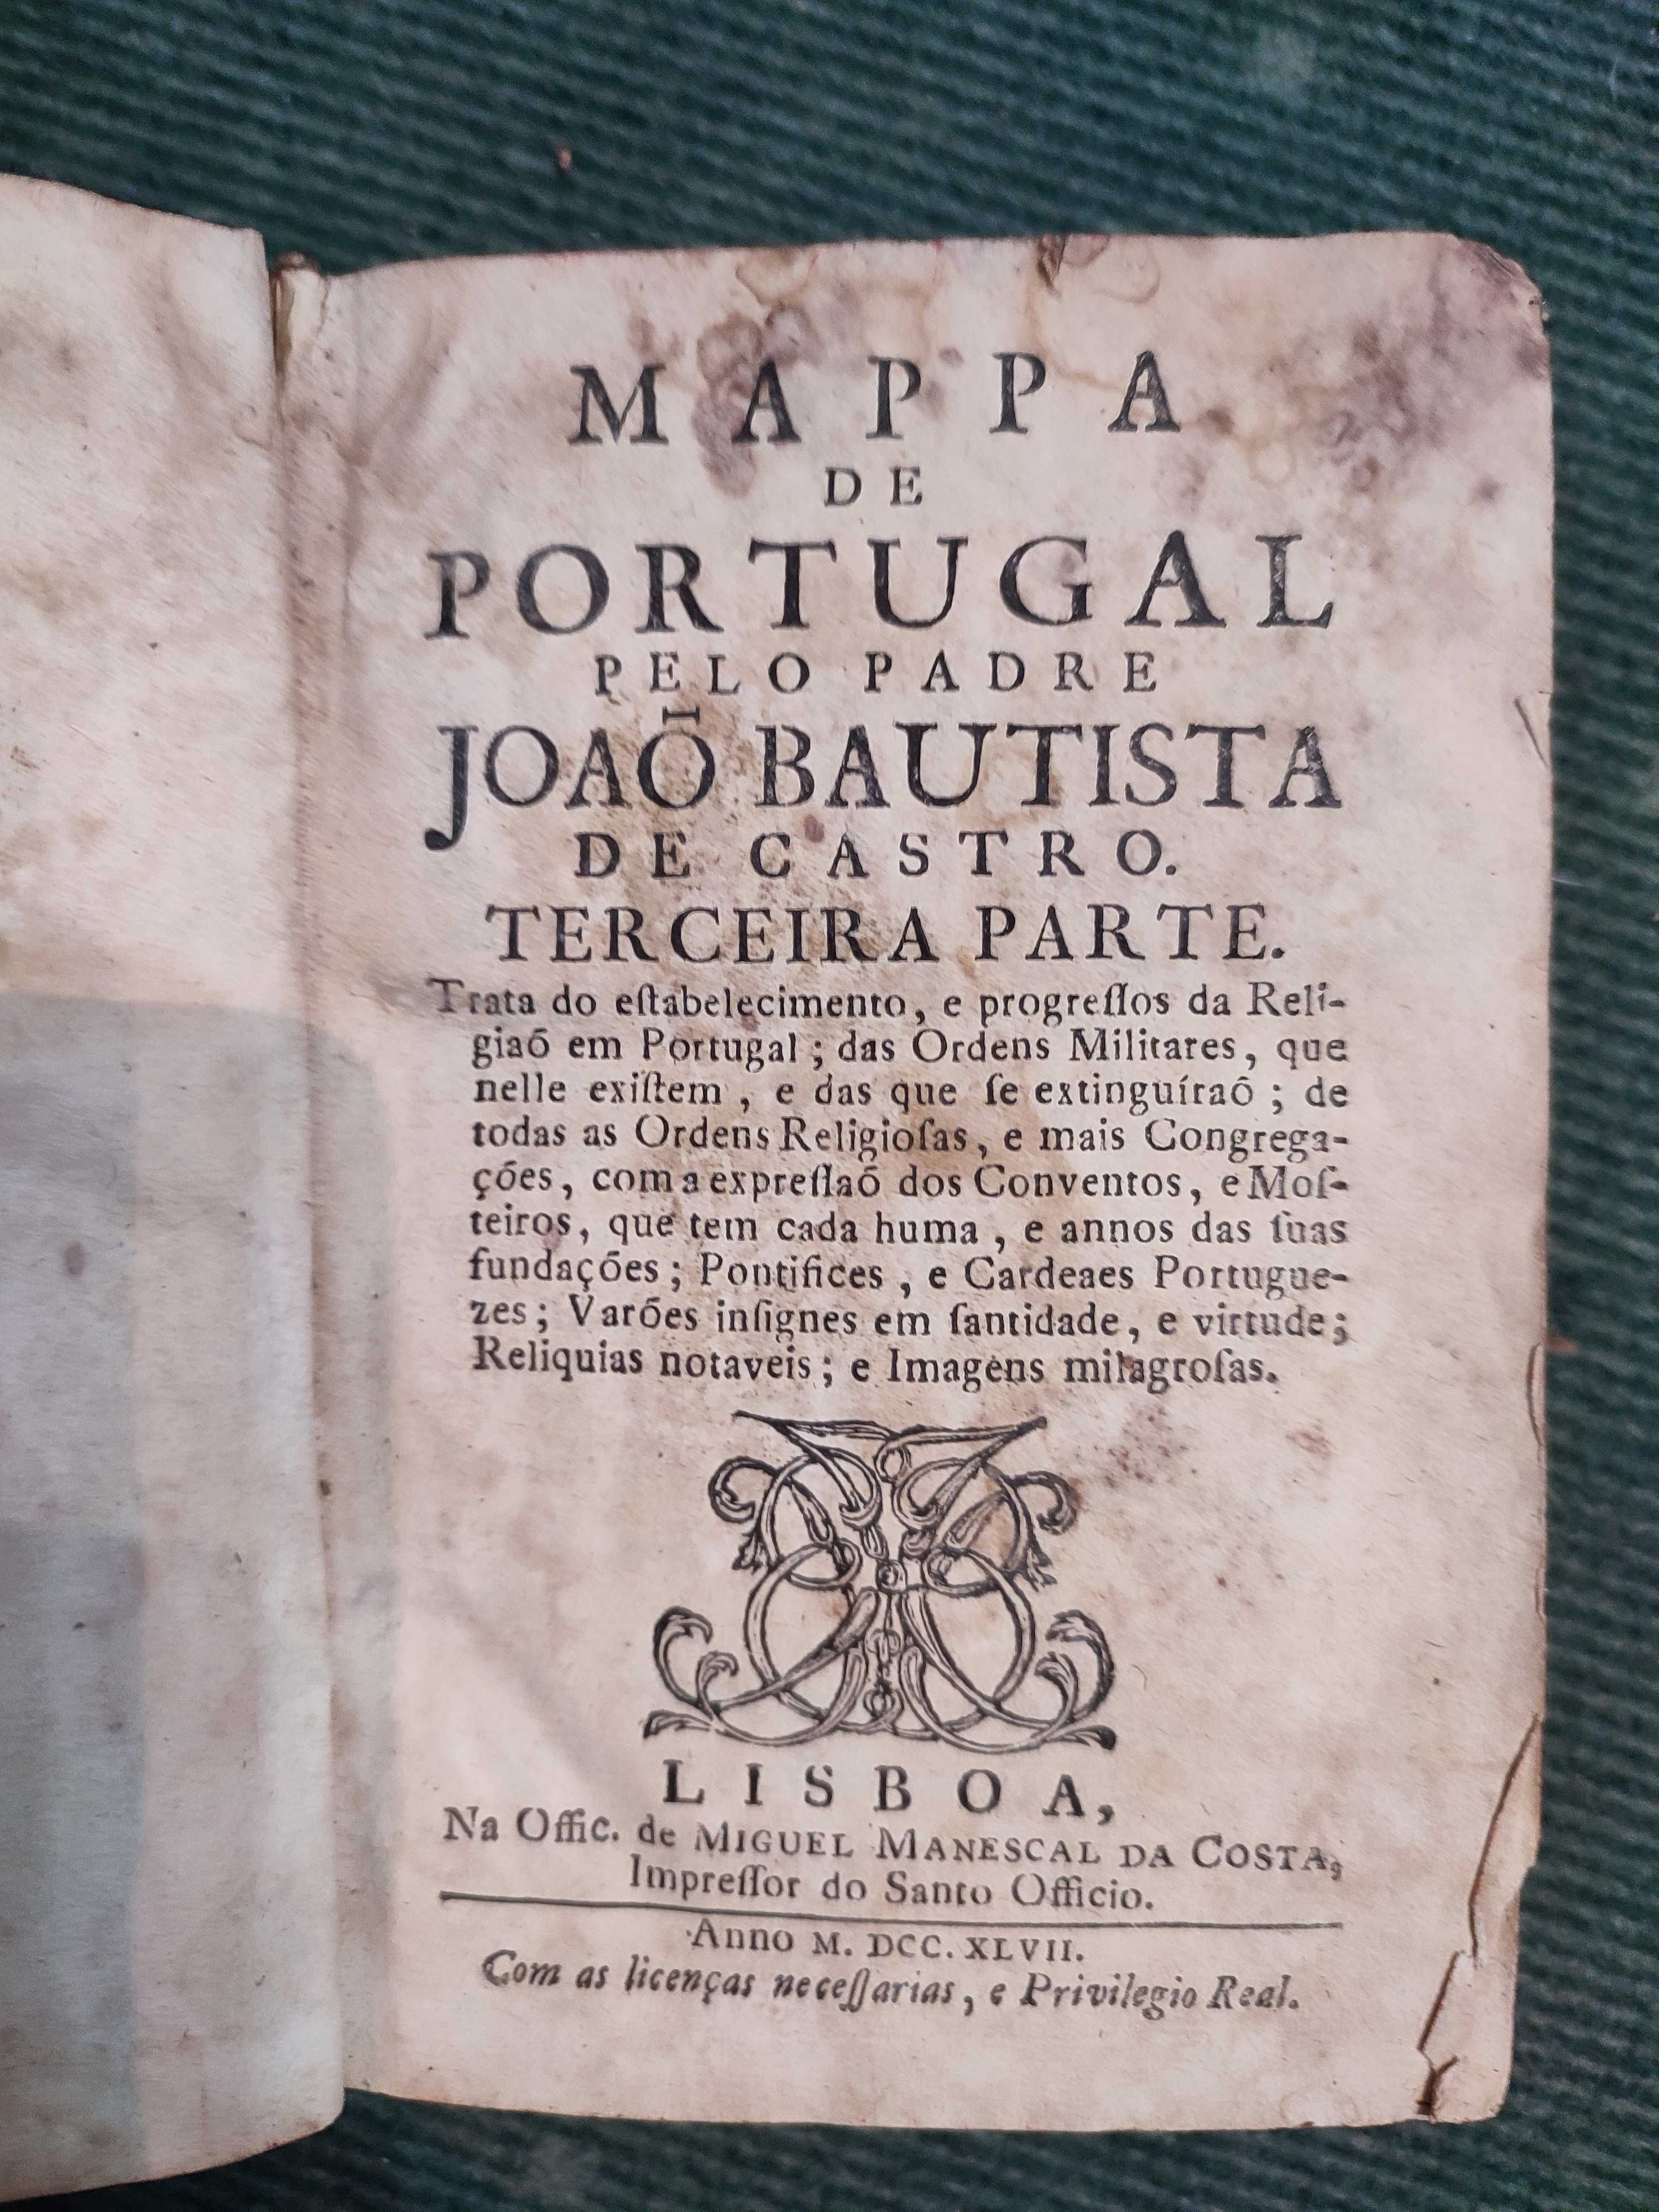 Mapa de Portugal pelo Padre João Bautista terceira parte - 1748